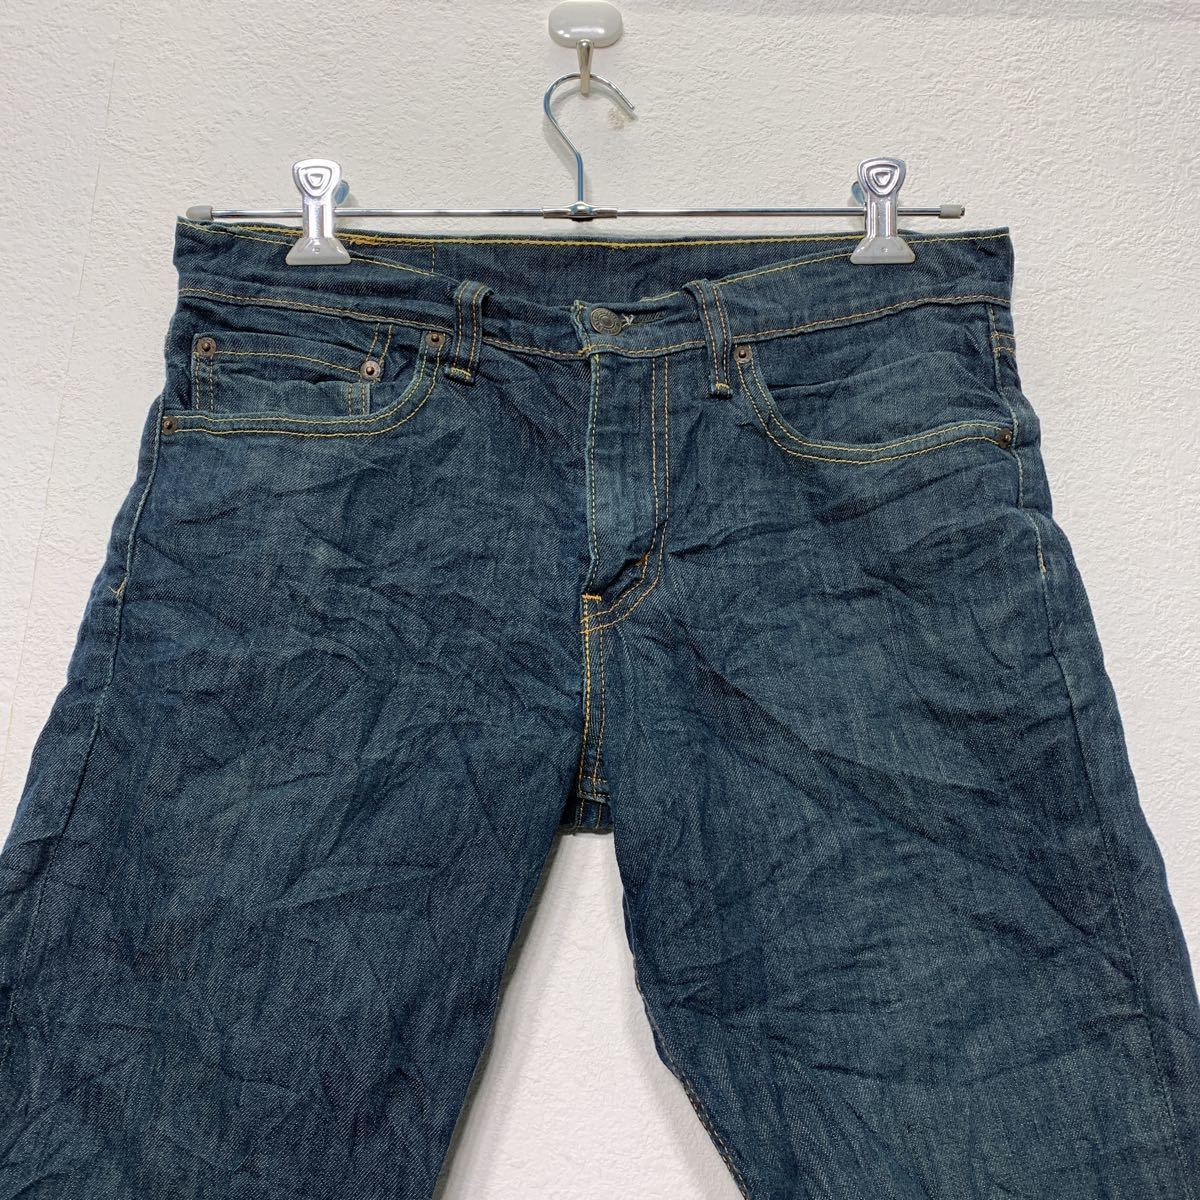 Levi's 511  Denim   шорты   W31  Levi's  ...  стрейч   укороченные брюки   бу одежда ...  Америка  хранение на складе  b407-66